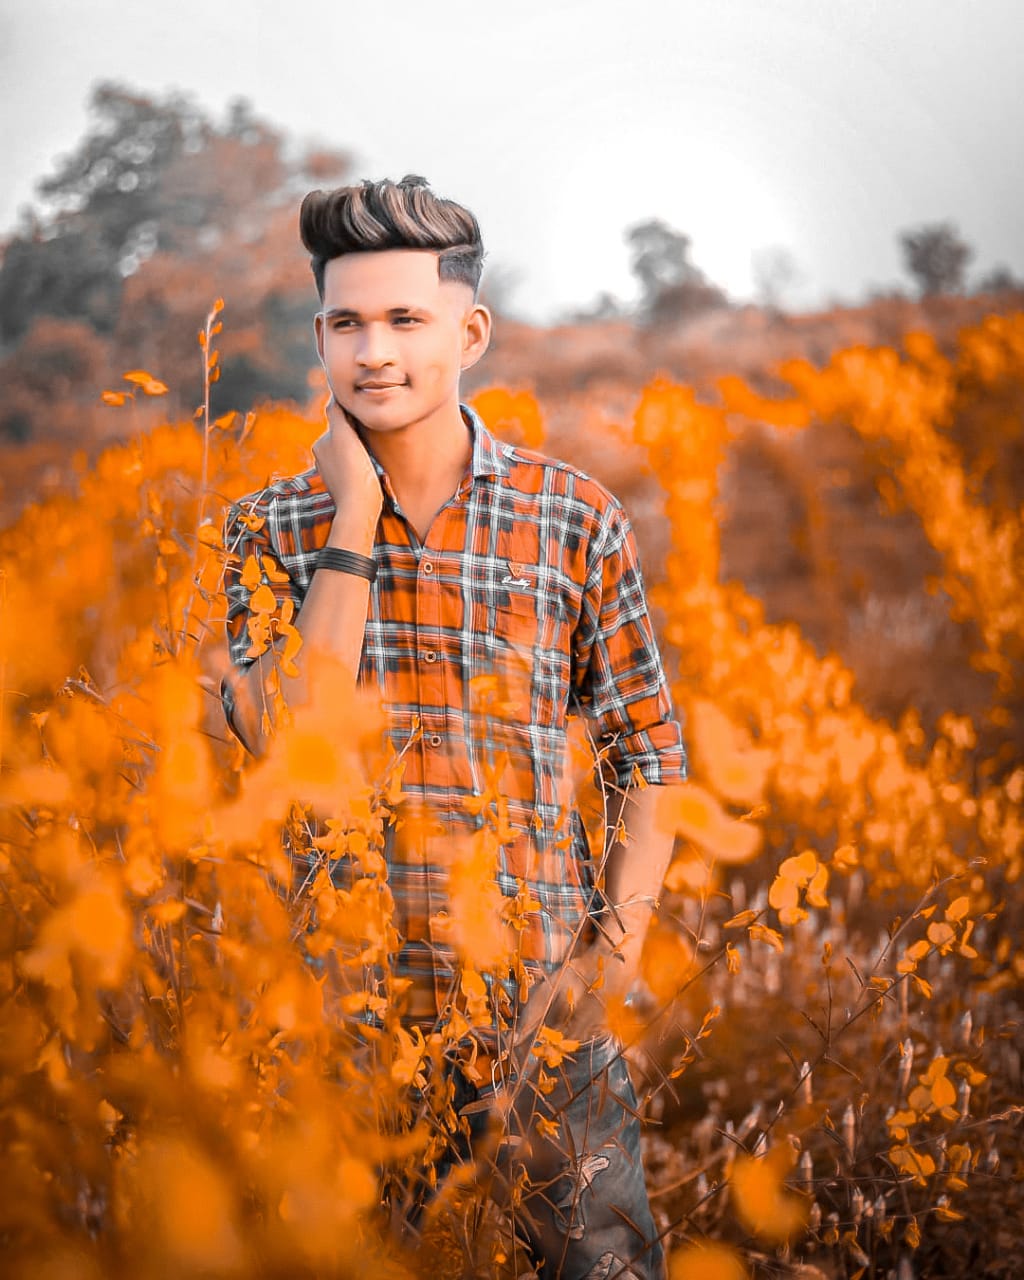 Chào đón bức ảnh tuyệt đẹp mang màu cam u uất với Snapseed, phần mềm chỉnh sửa ảnh tiêu chuẩn của điện thoại thông minh. Trải nghiệm các hiệu ứng màu, tinh chỉnh giảm nhiễu và chỉnh sửa tiên tiến, và tạo ra bức ảnh độc đáo cho riêng mình.